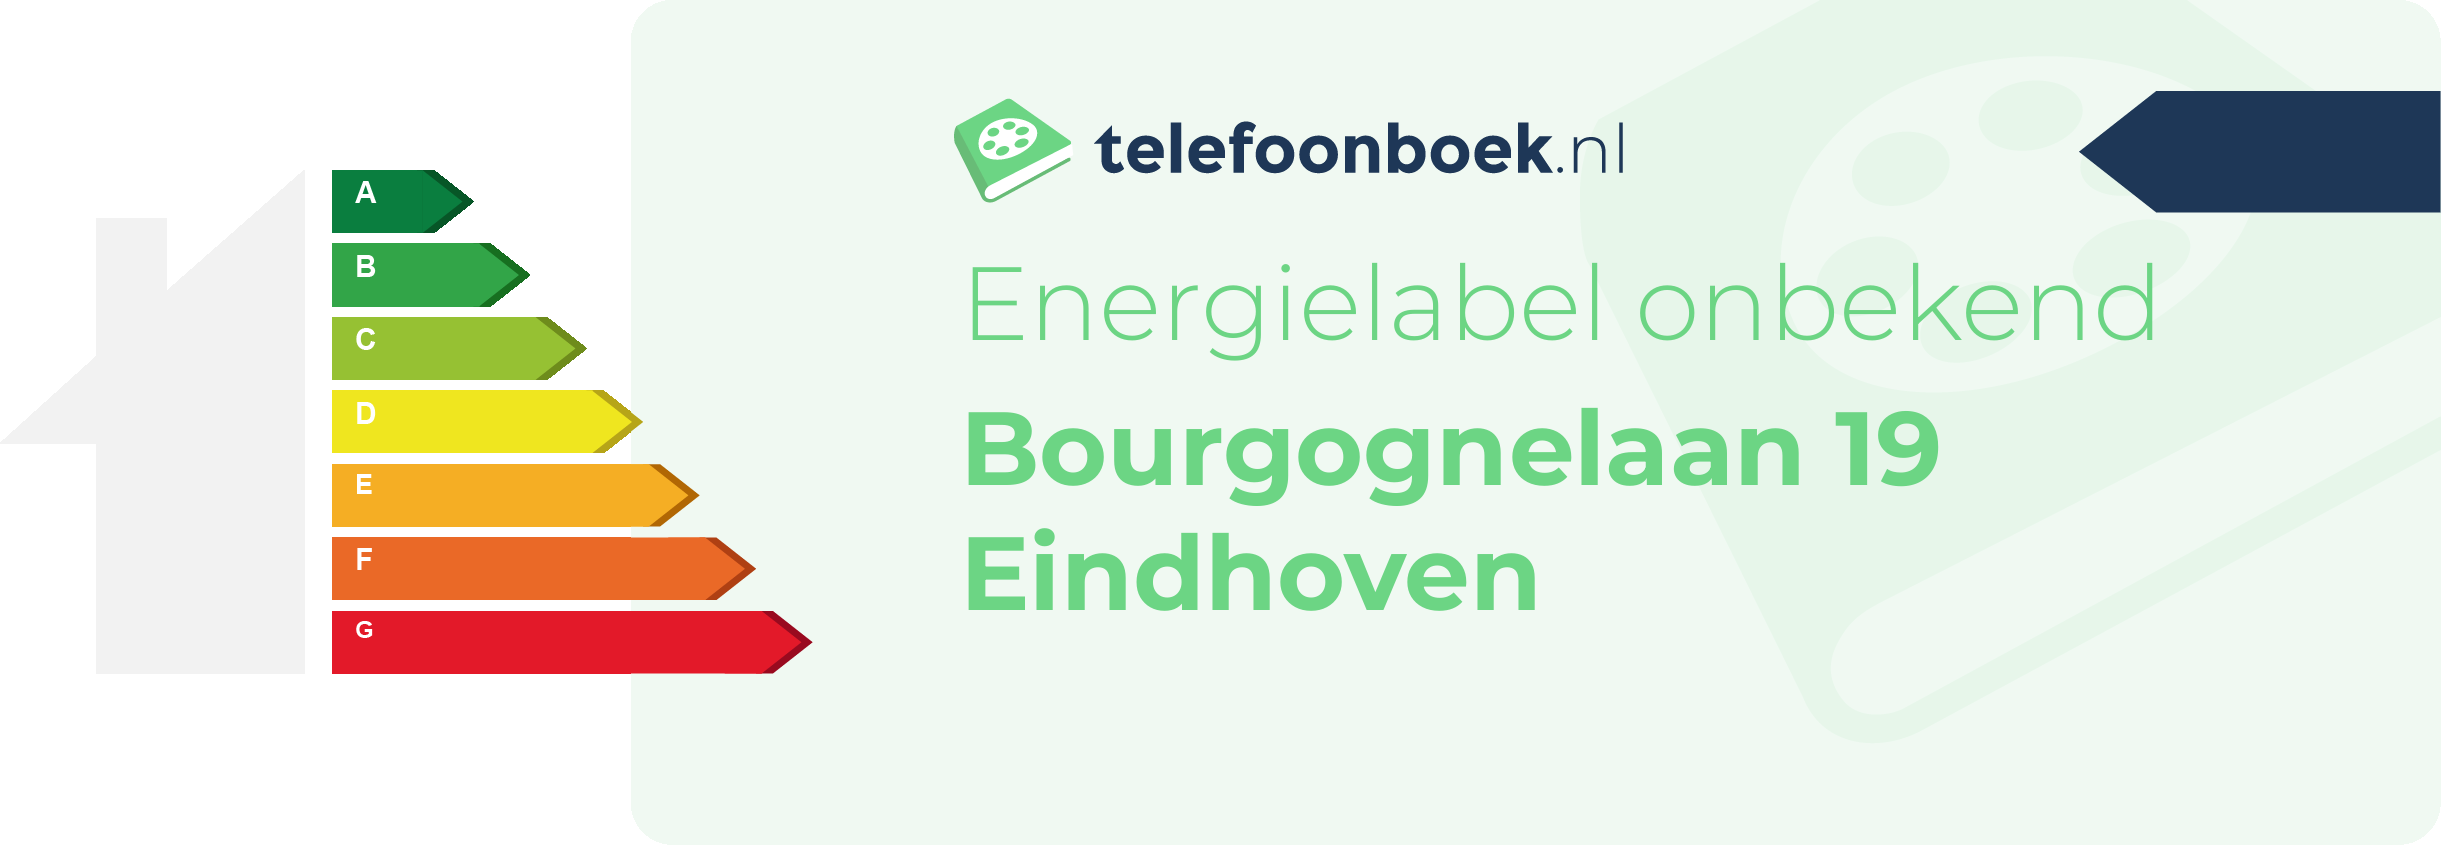 Energielabel Bourgognelaan 19 Eindhoven